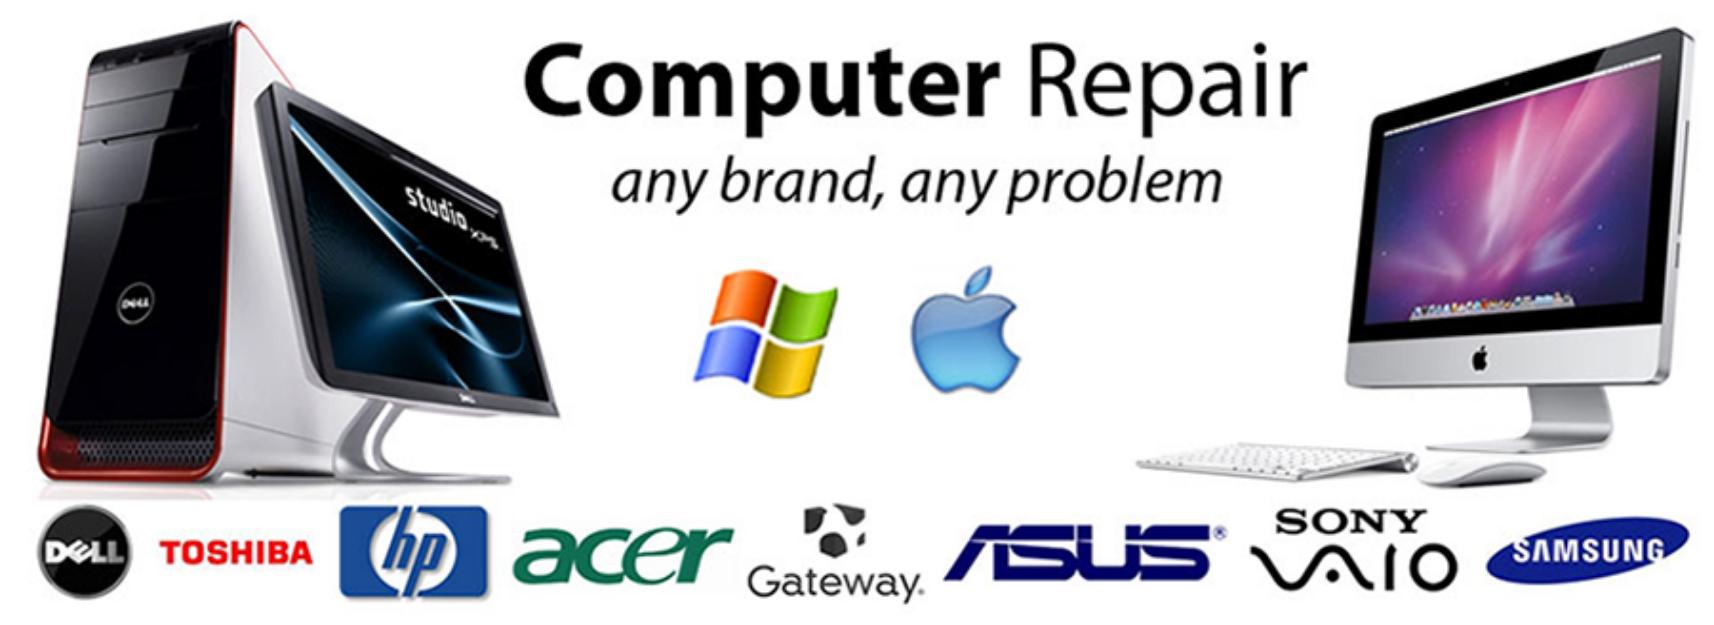 computer-repair-banner1